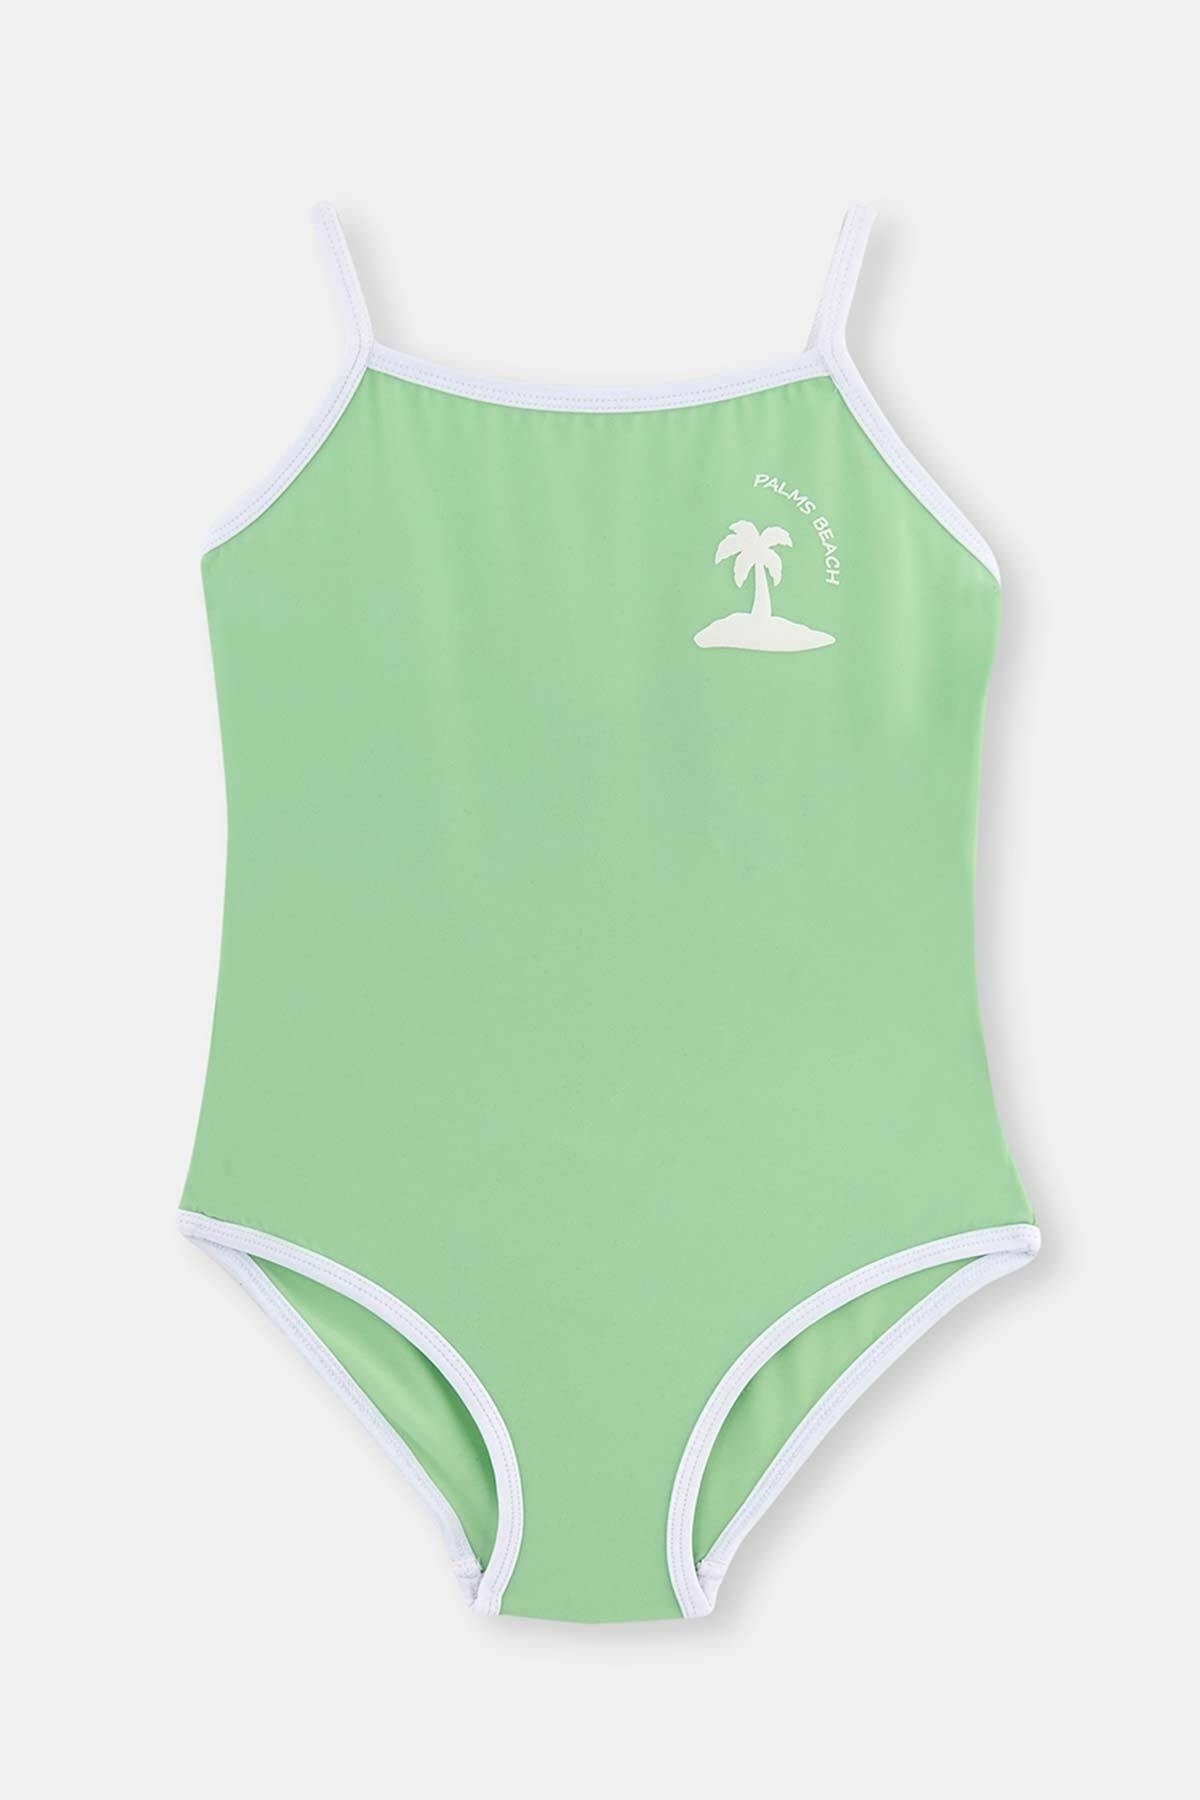 Dagi Green Trim Swimwear